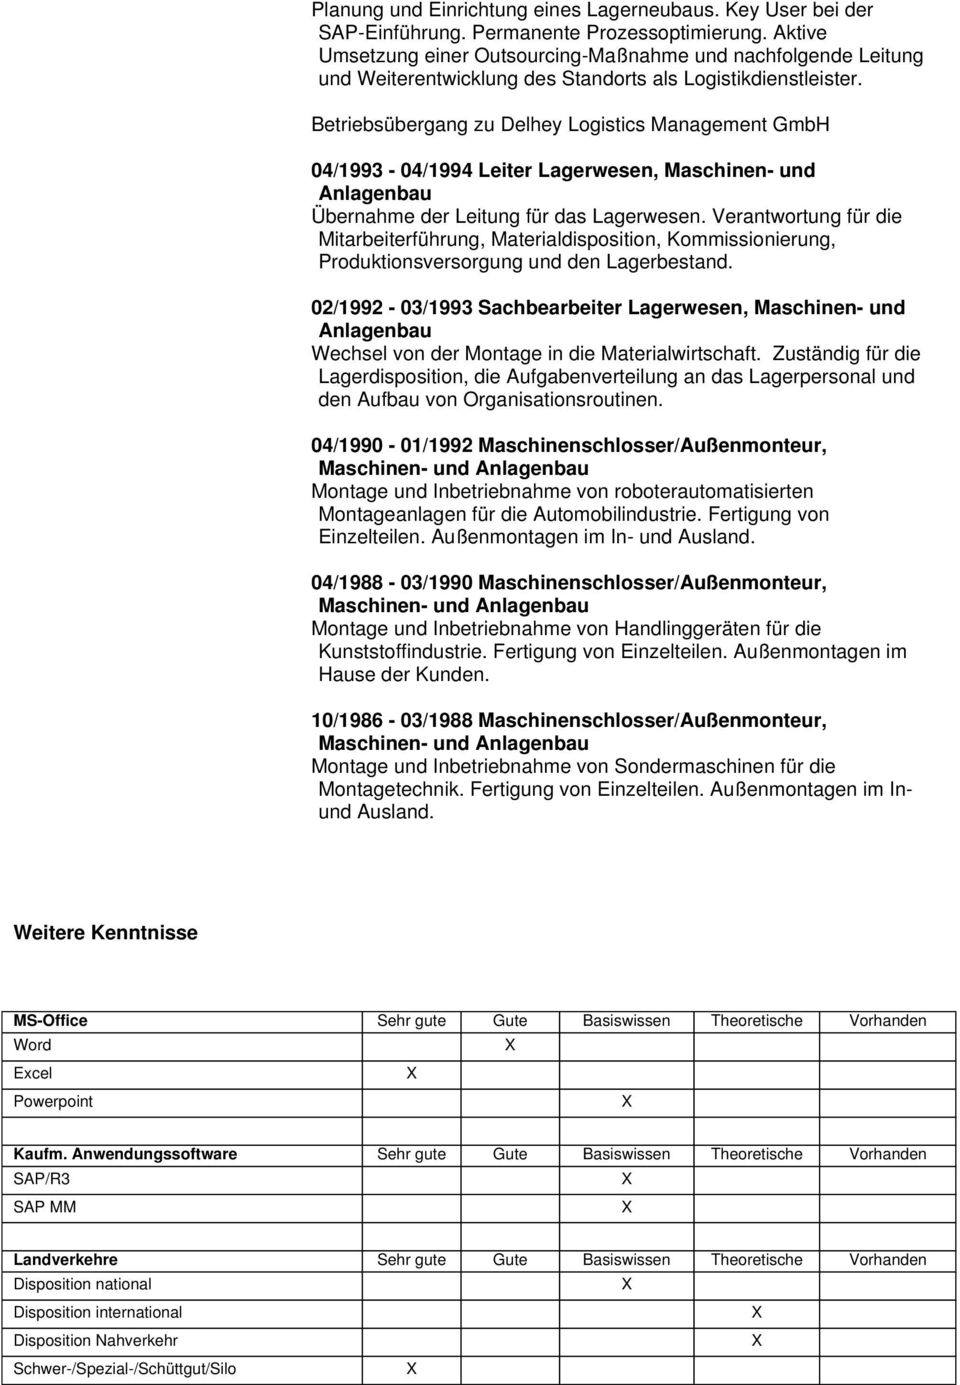 Betriebsübergang zu Delhey Logistics Management GmbH 04/1993-04/1994 Leiter Lagerwesen, Maschinen- und Übernahme der Leitung für das Lagerwesen.